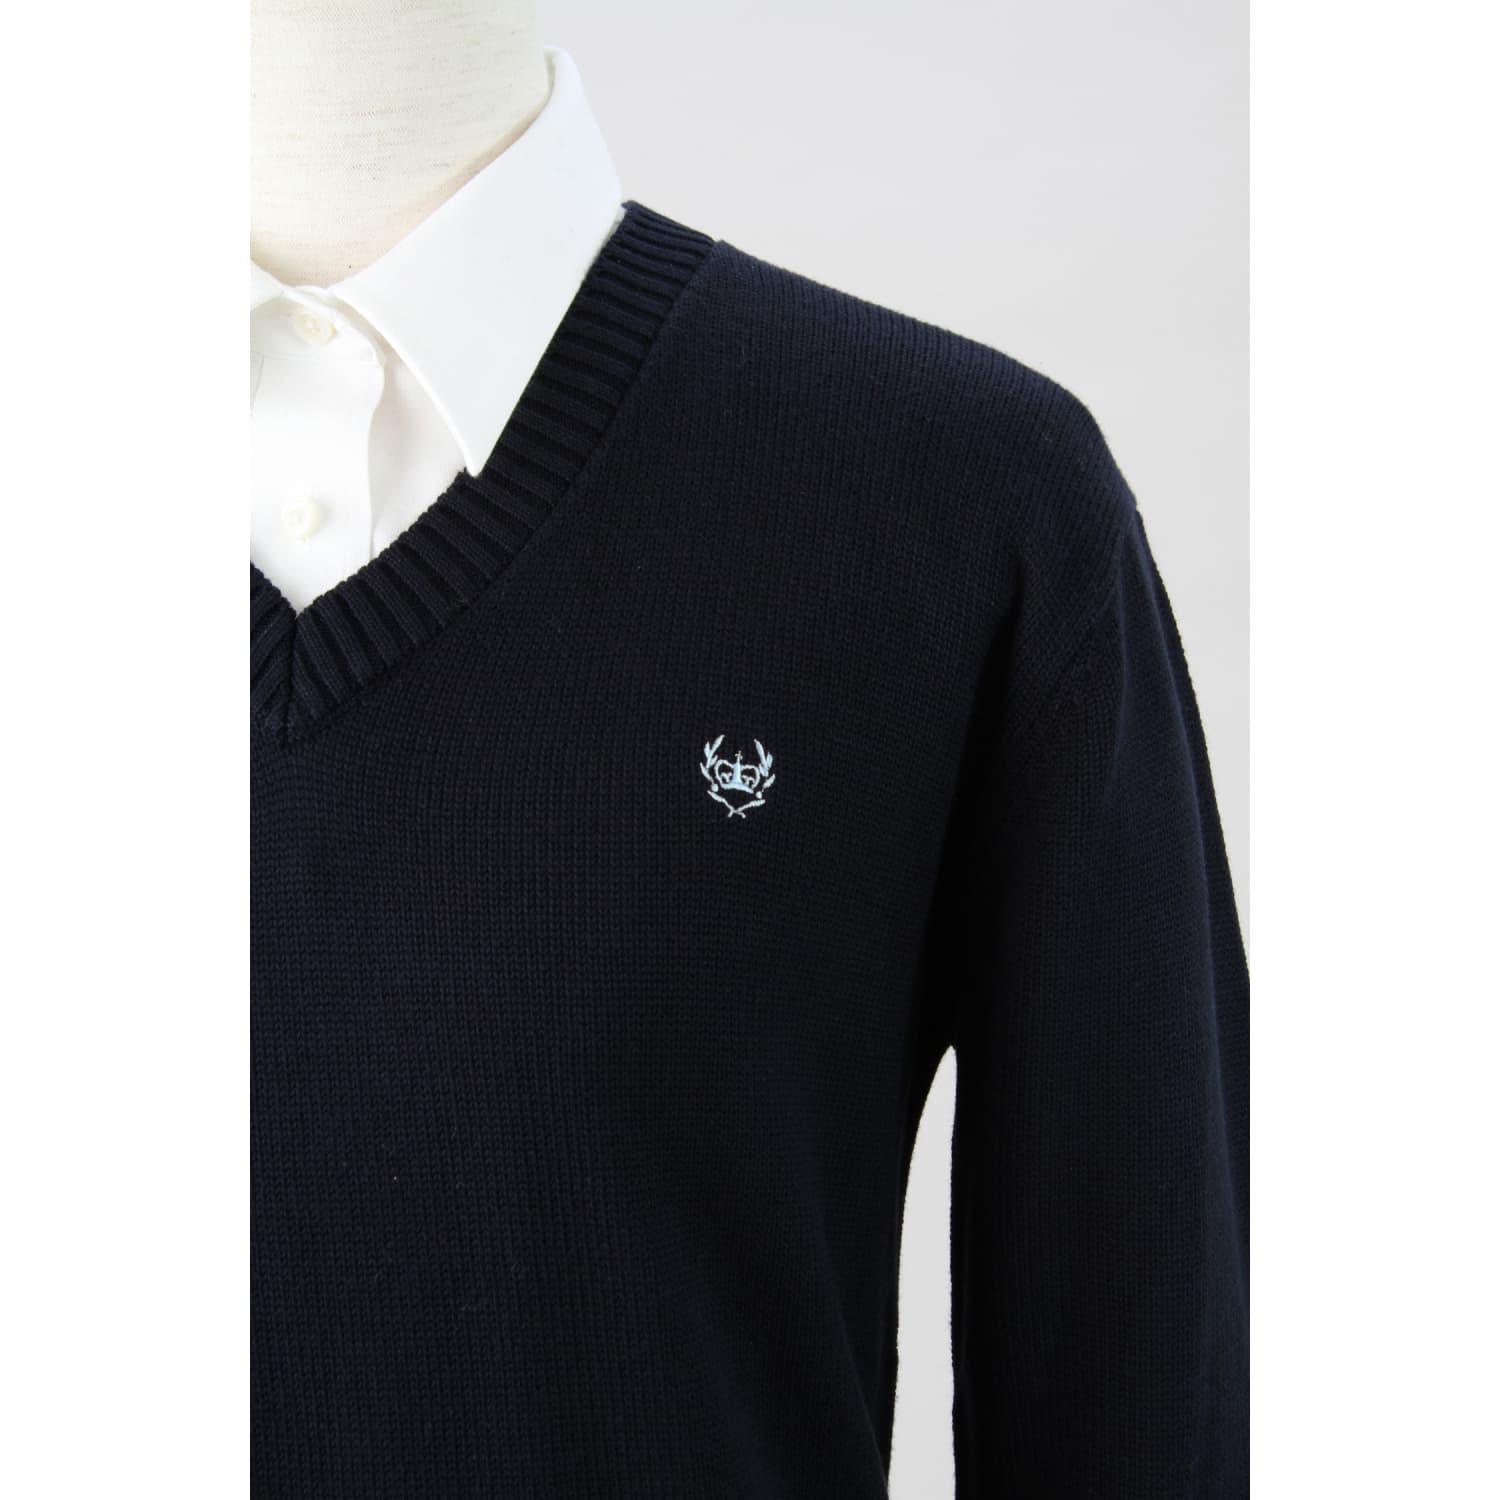 クラウン刺繍綿混8Gセーター(M ライトグレー×ネイビー刺繍): オリーブデオリーブスクール【トンボ公式オンラインモール】